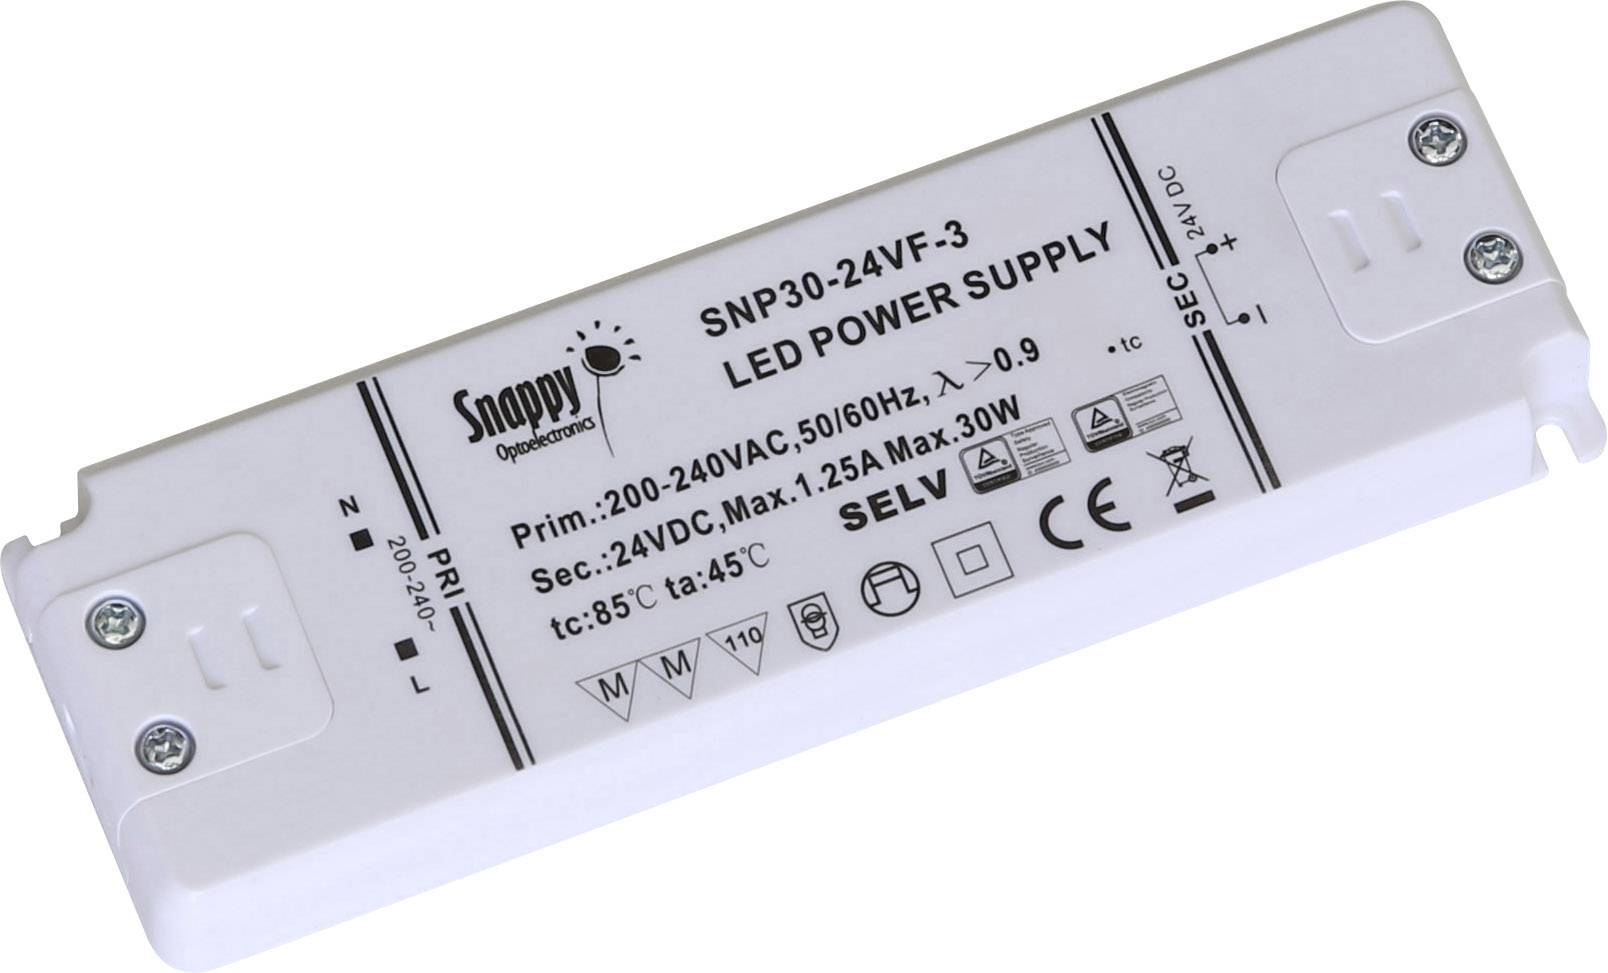 snappy psu snp30-12vf-3 power supply 12vdc 30w 2.5a